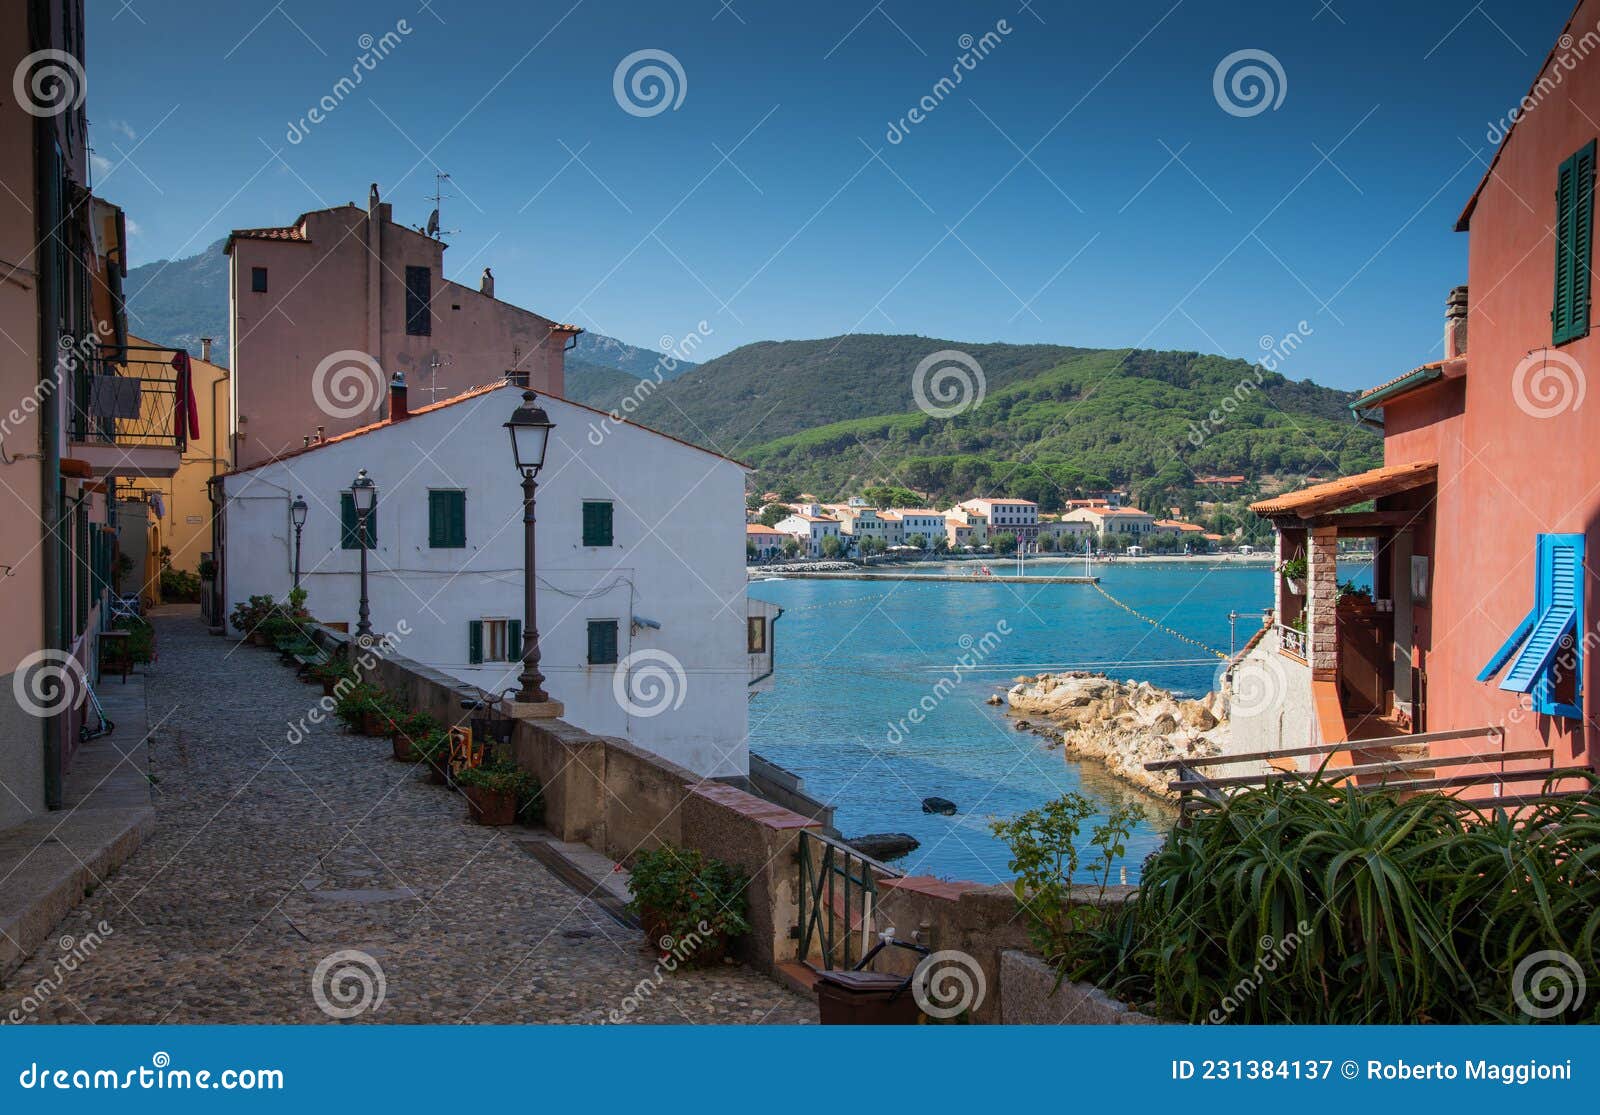 elba island, old village of marciana marina, italy, tuscany.